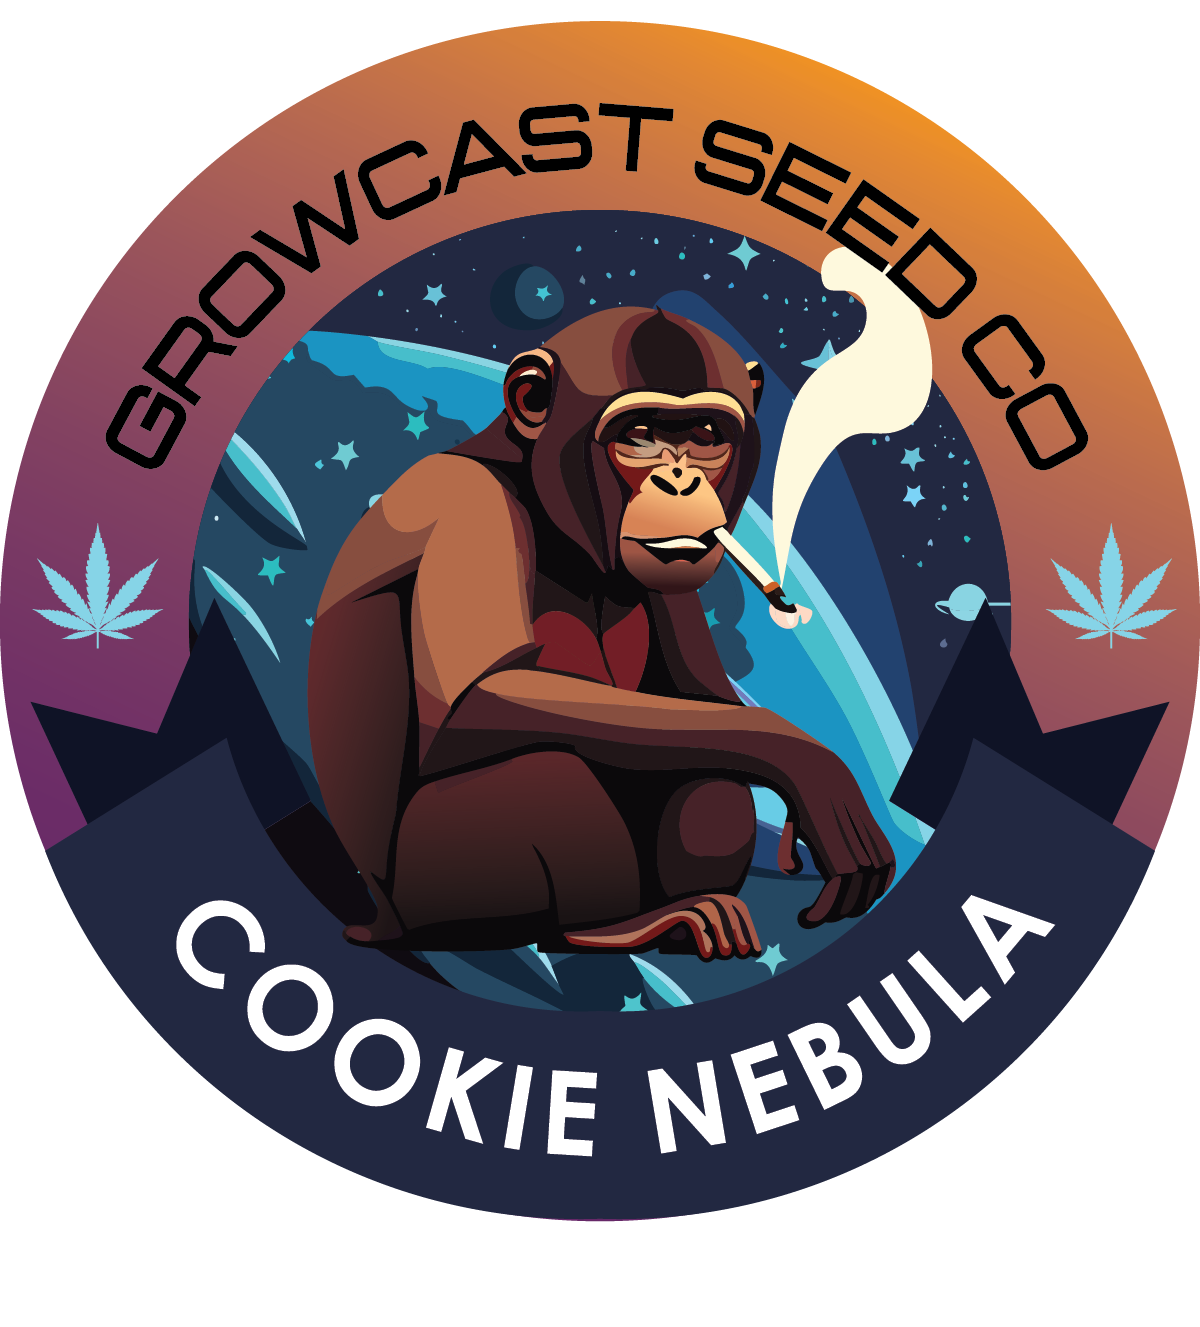 Cookie Nebula